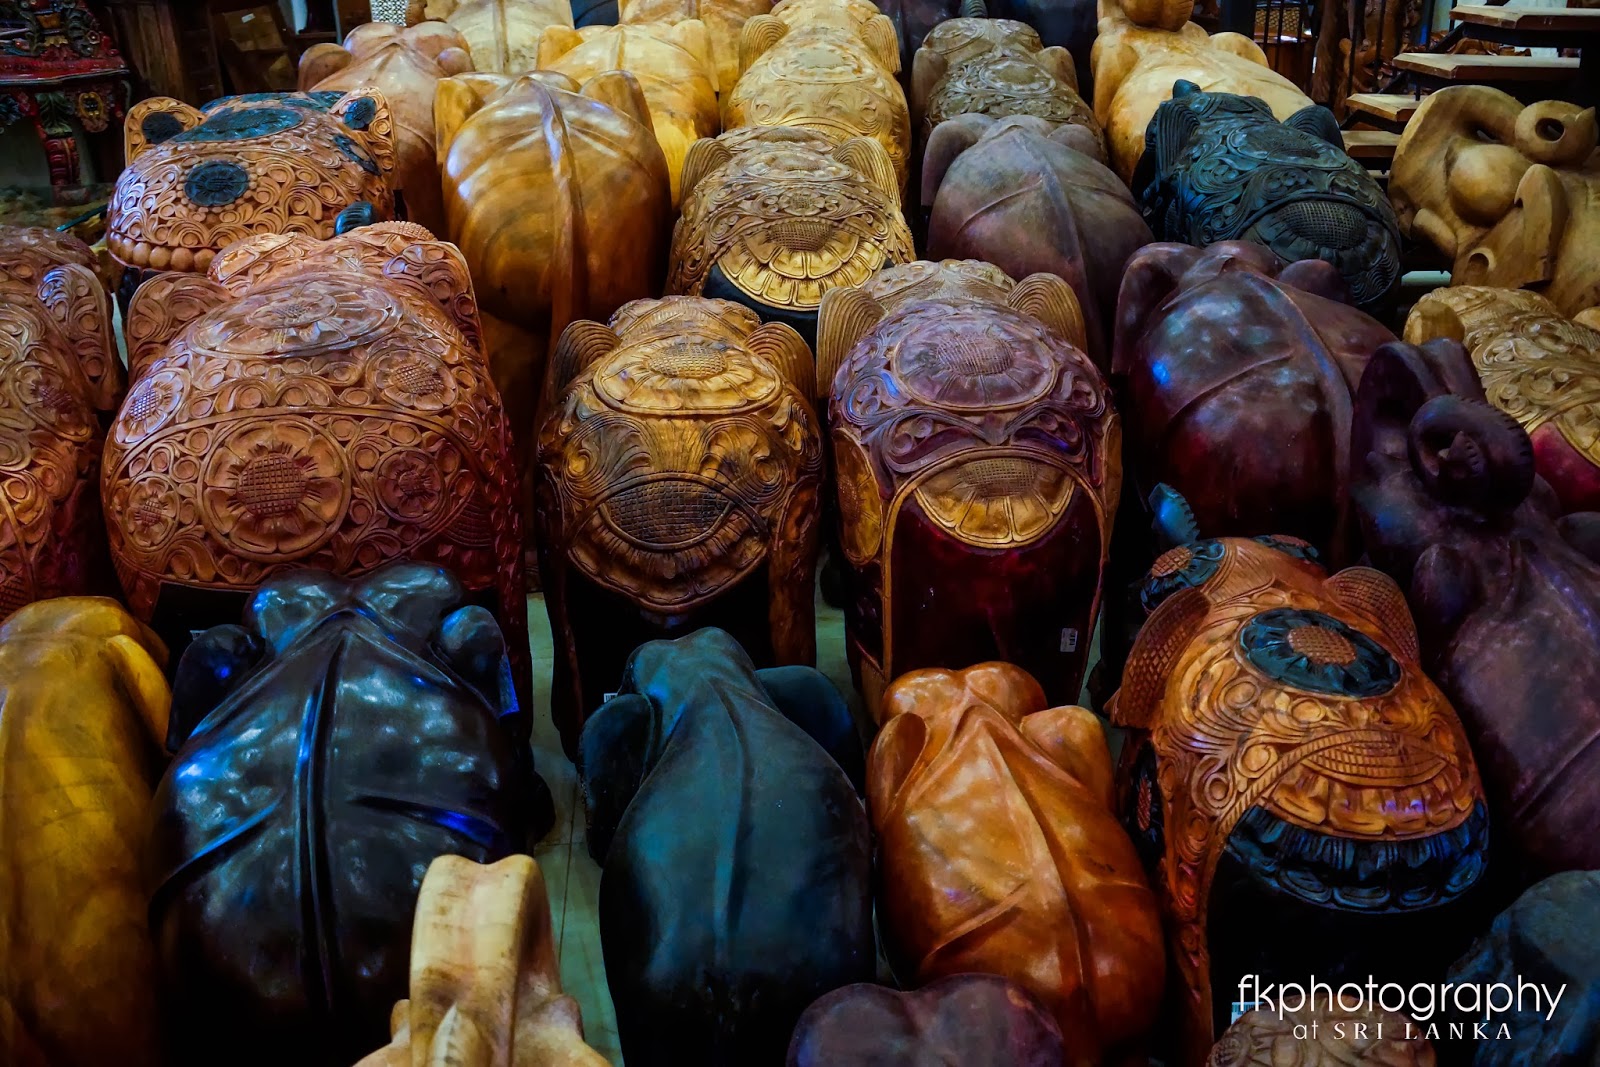 fkphotography: Kandy's Craft Shop, Kandy, Sri Lanka